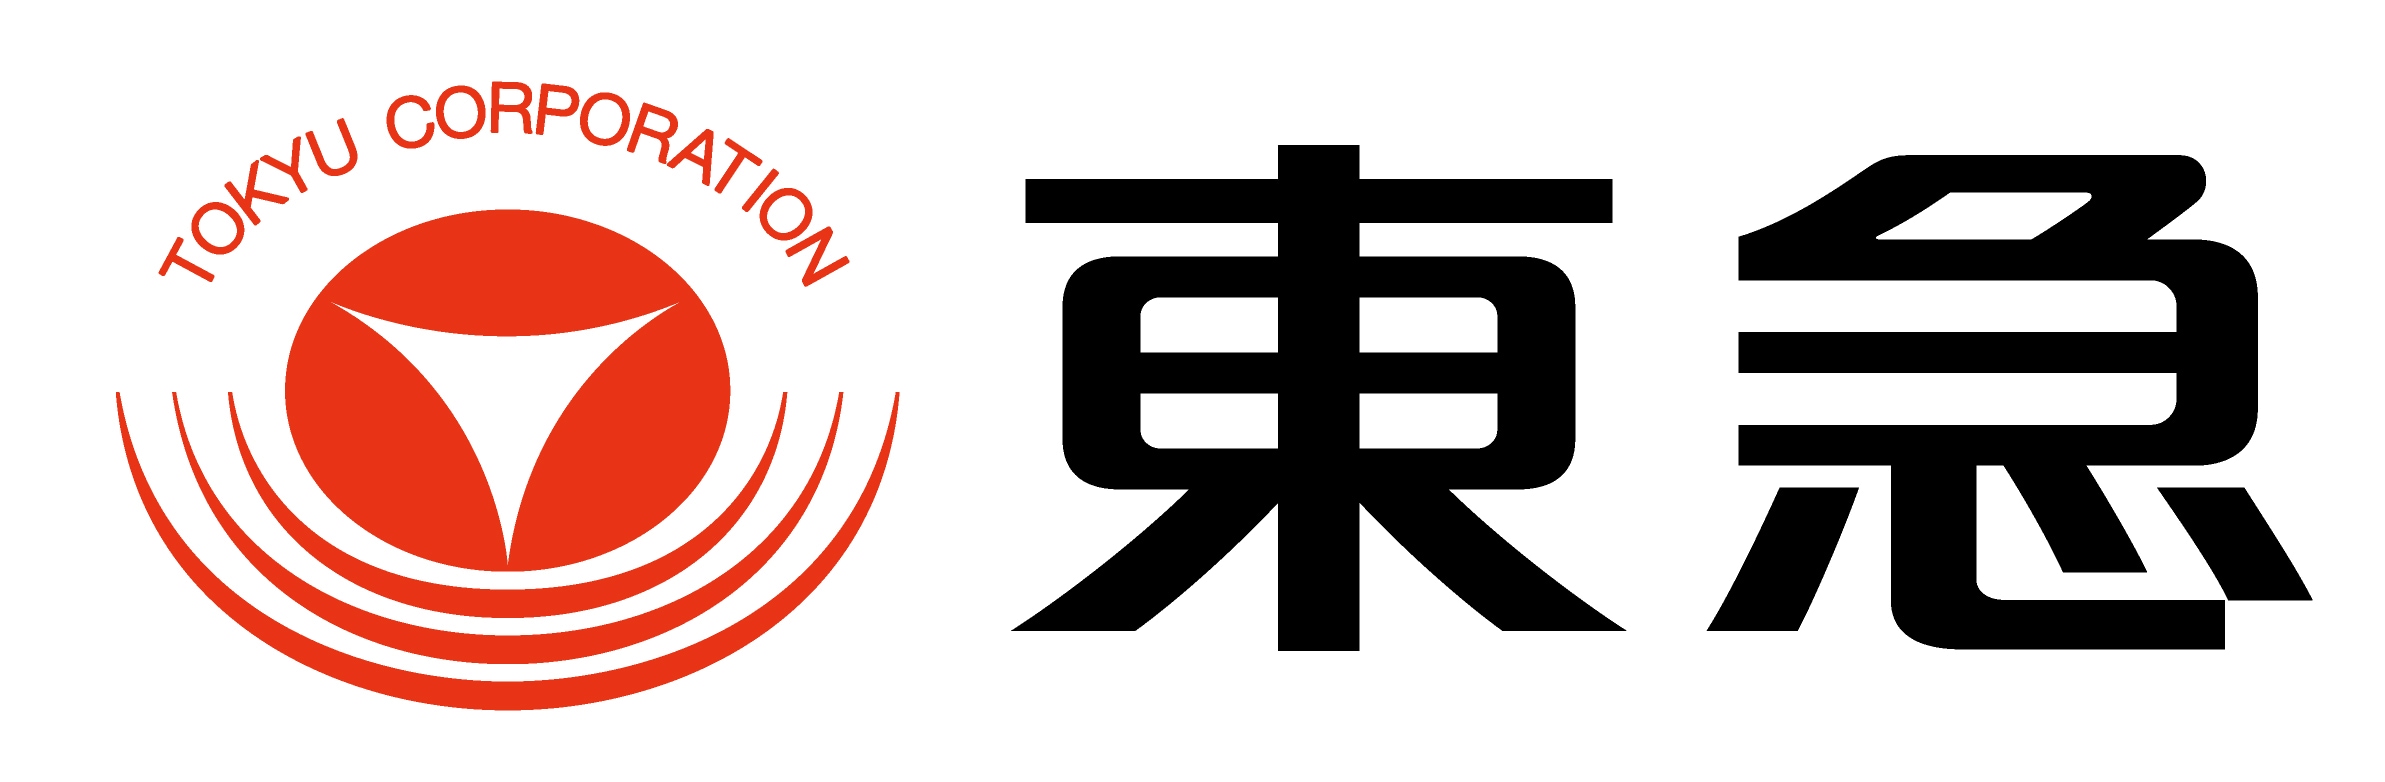 Tokyu logo